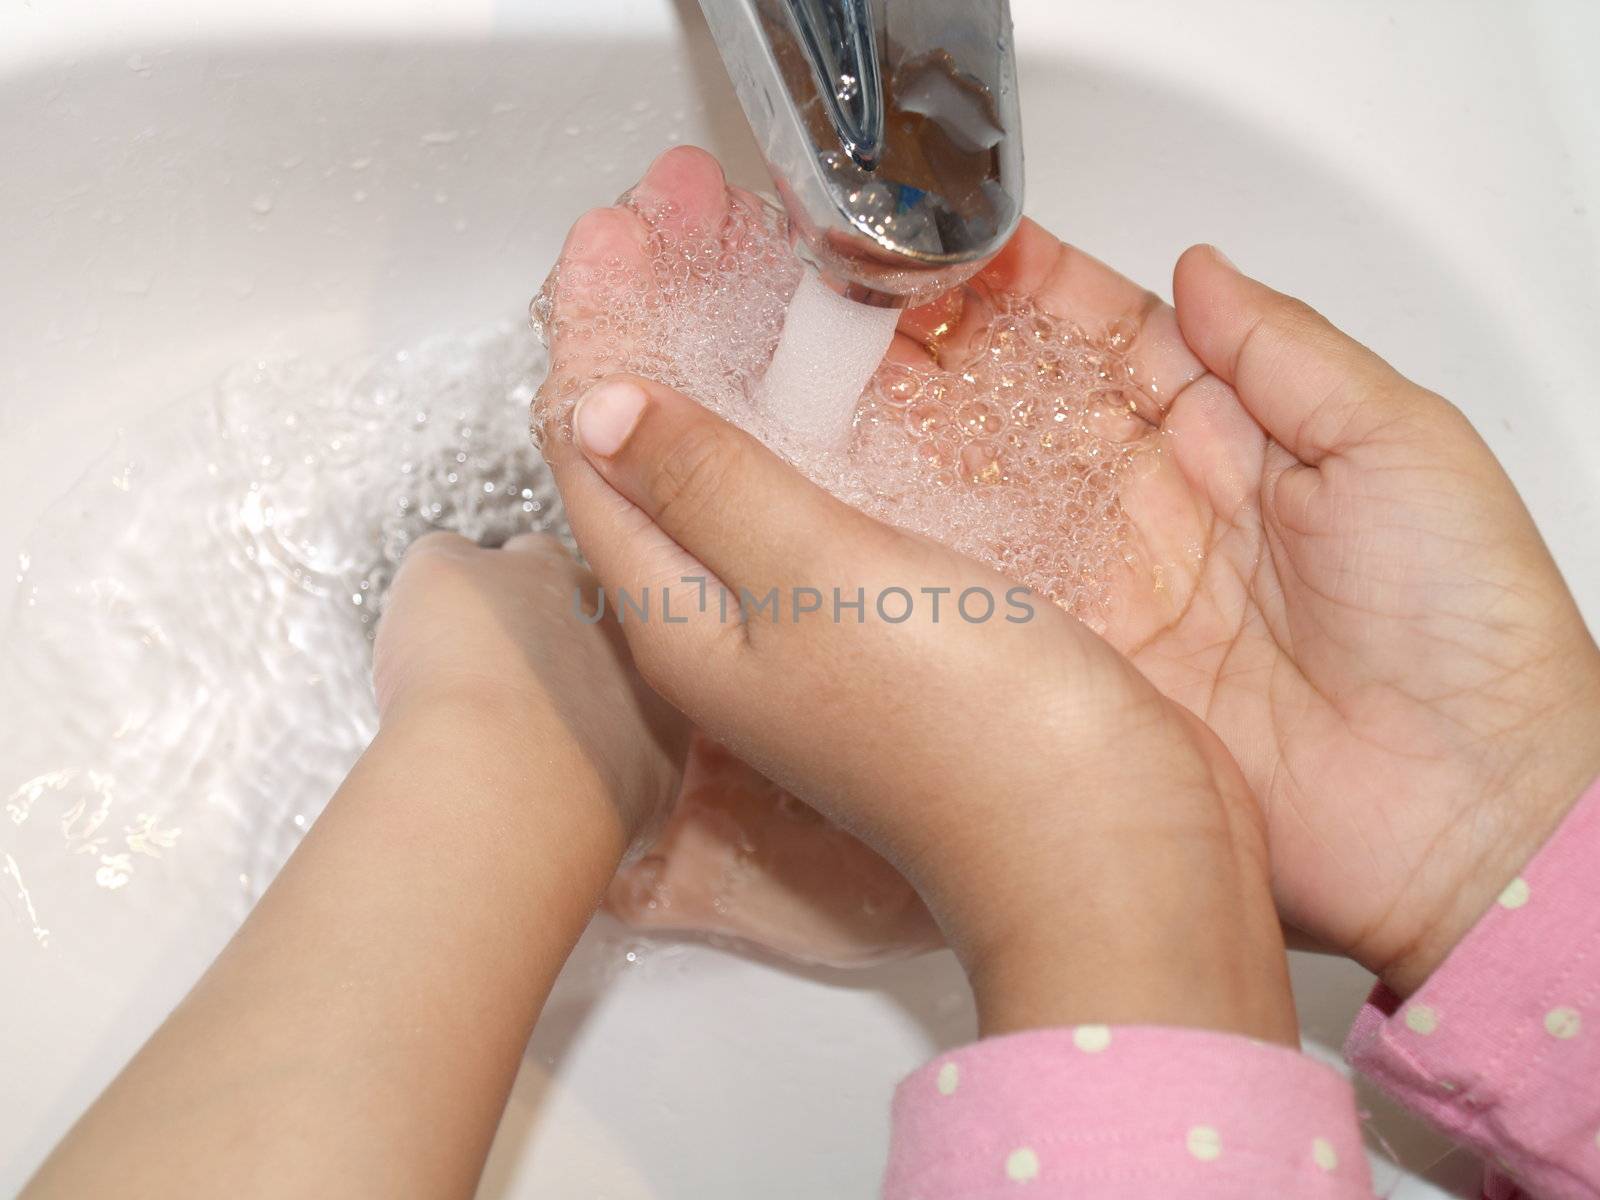 kids washing by viviolsen